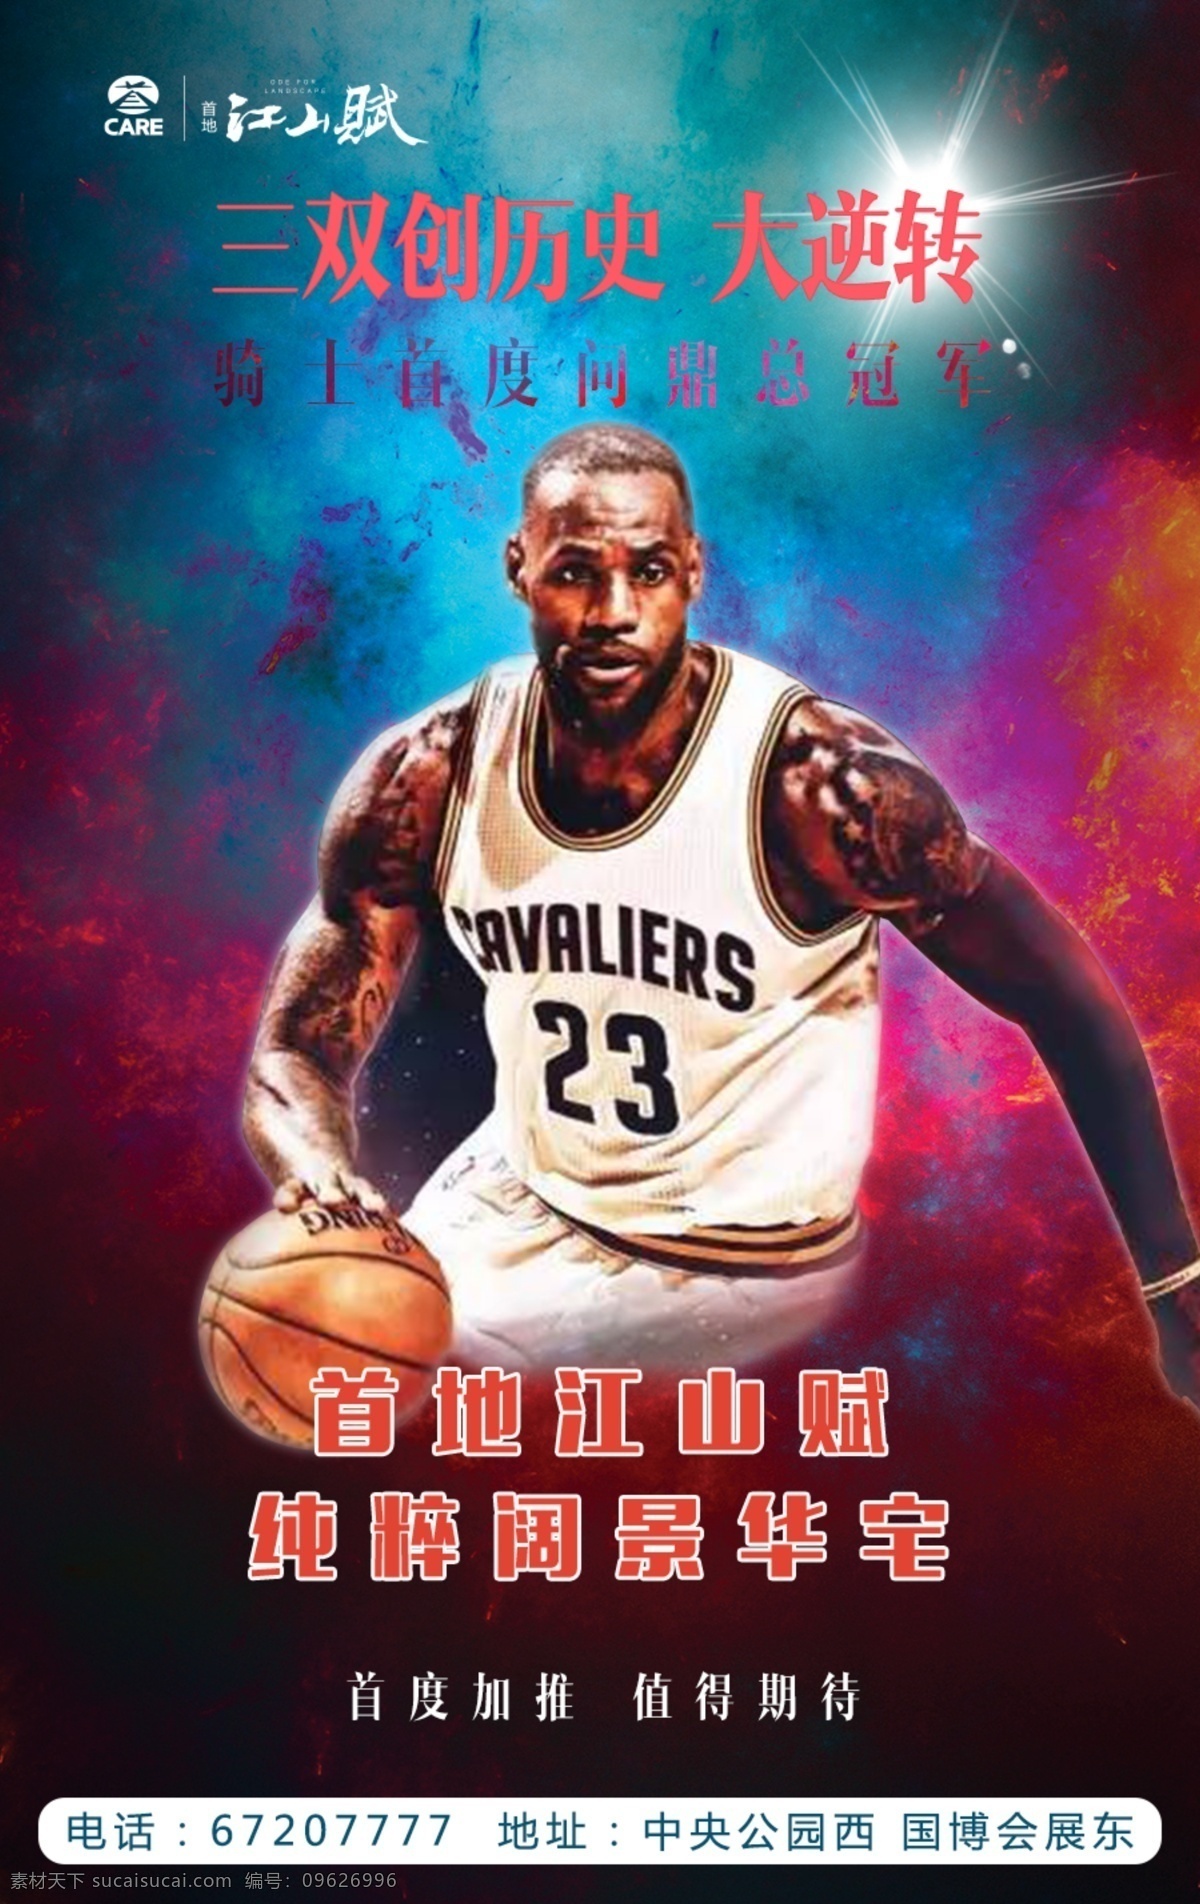 詹姆斯nba 詹姆斯 nba 篮球海报 逆转 传奇 房地产海报